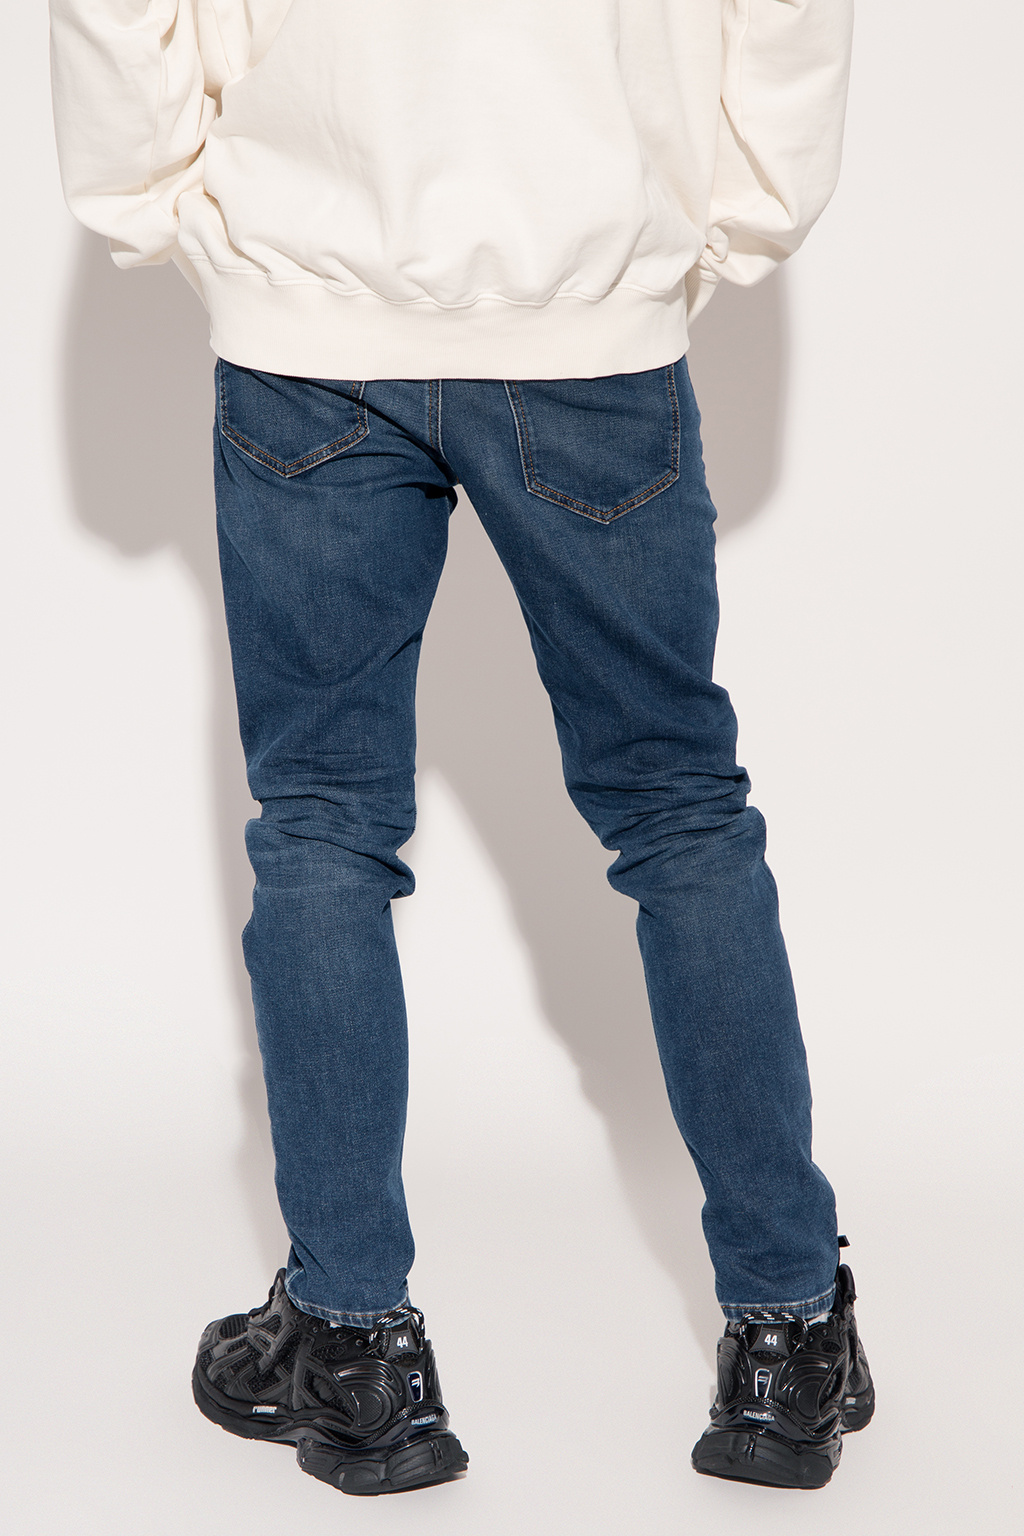 Diesel 'D-Strukt' jeans | Men's Clothing | Vitkac